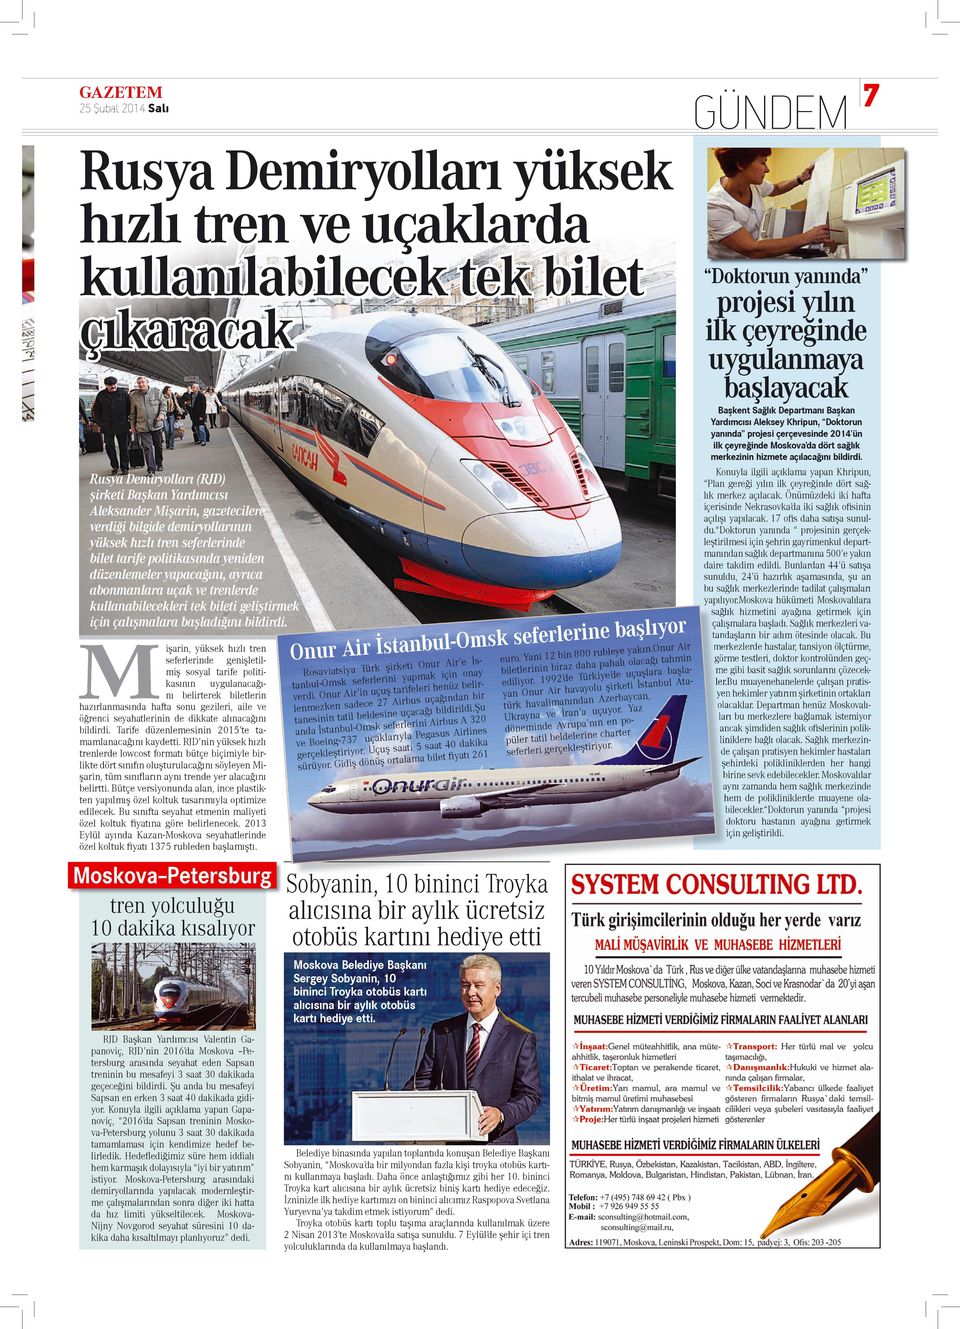 Rusya Demiryolları (RJD) şirketi Başkan Yardımcısı Aleksander Mişarin, gazetecilere verdiği bilgide demiryollarının yüksek hızlı tren seferlerinde bilet tarife politikasında yeniden düzenlemeler